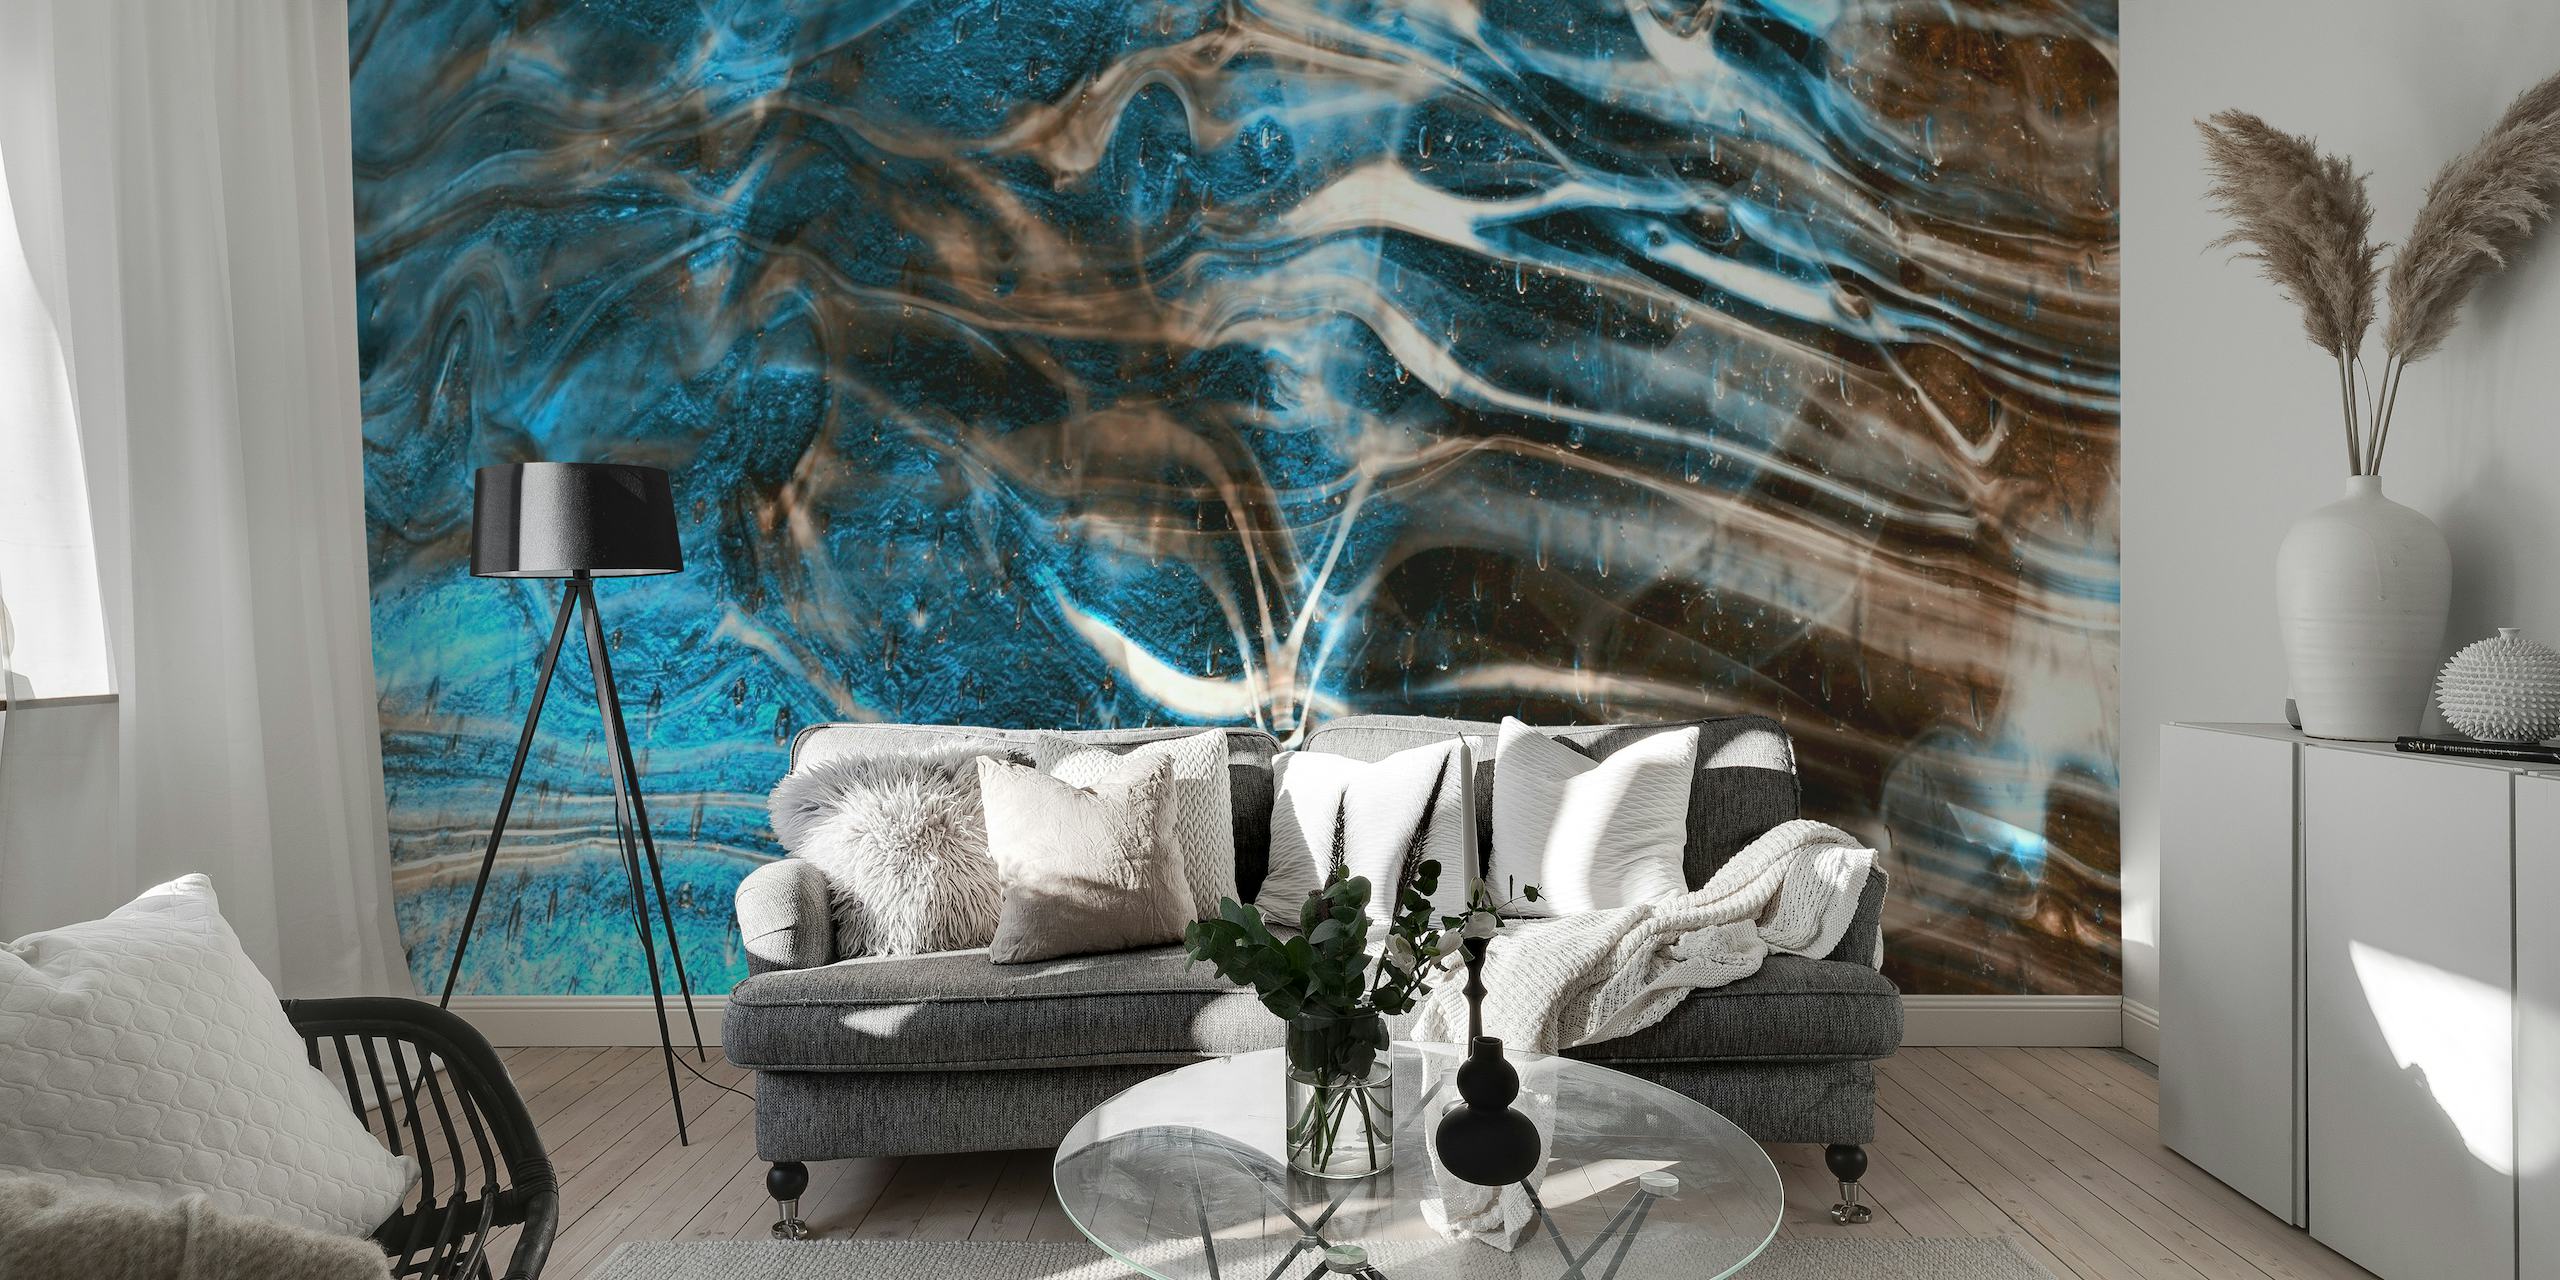 Väggmålning i blått och brunt marmormönster för en lugnande rumsatmosfär